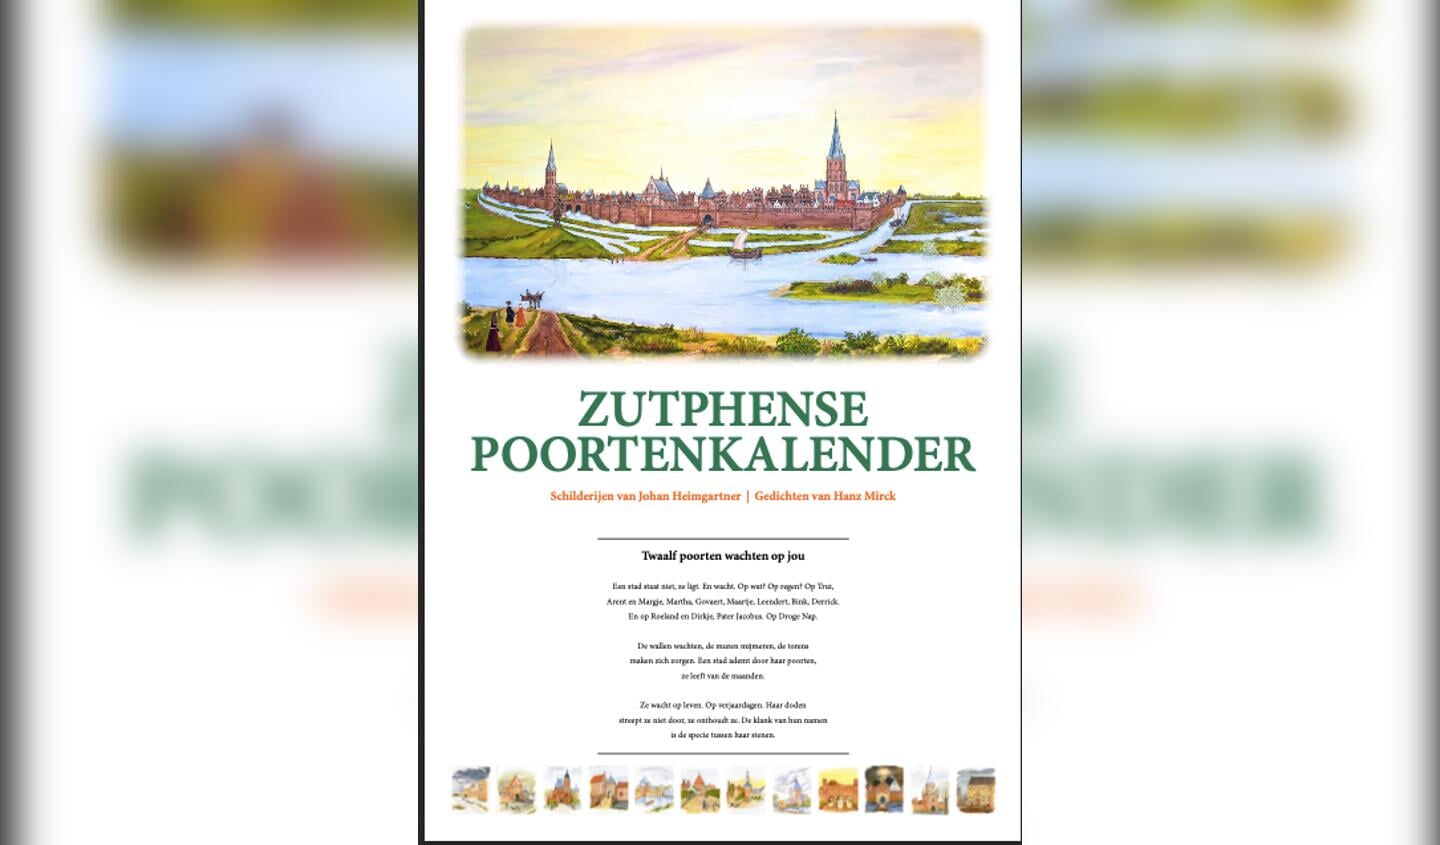 De Zutphense Poortenkalender is een uitgave van Uitgeverij Hermans. 